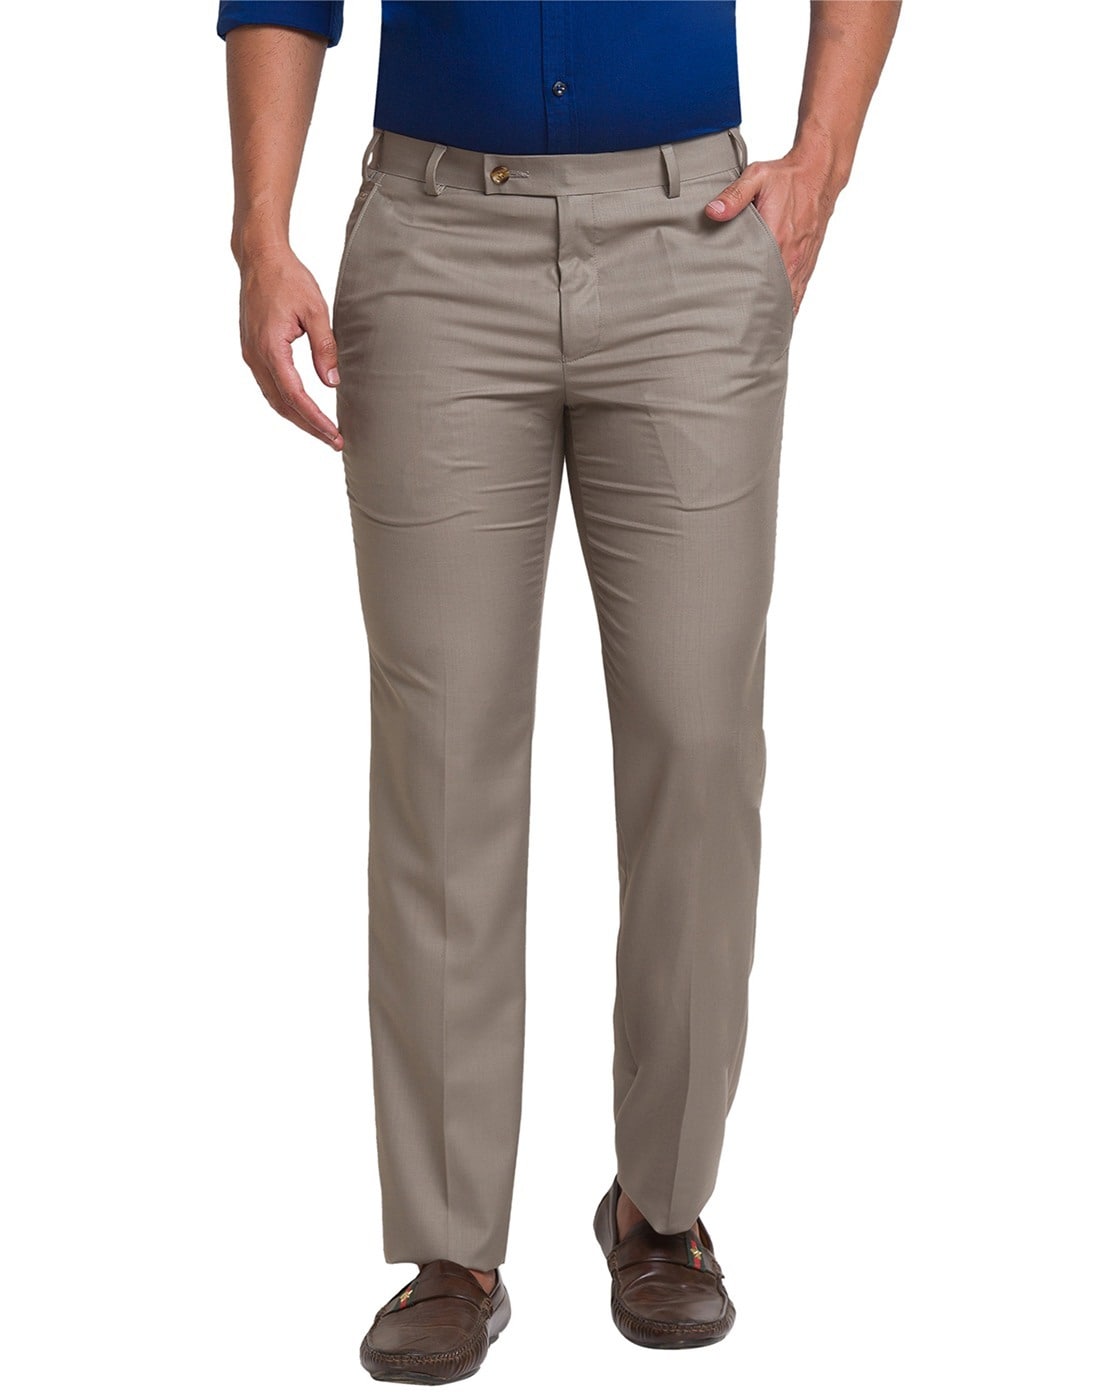 Buy Park Avenue Dark Brown Regular Fit Trousers for Men Online  Tata CLiQ